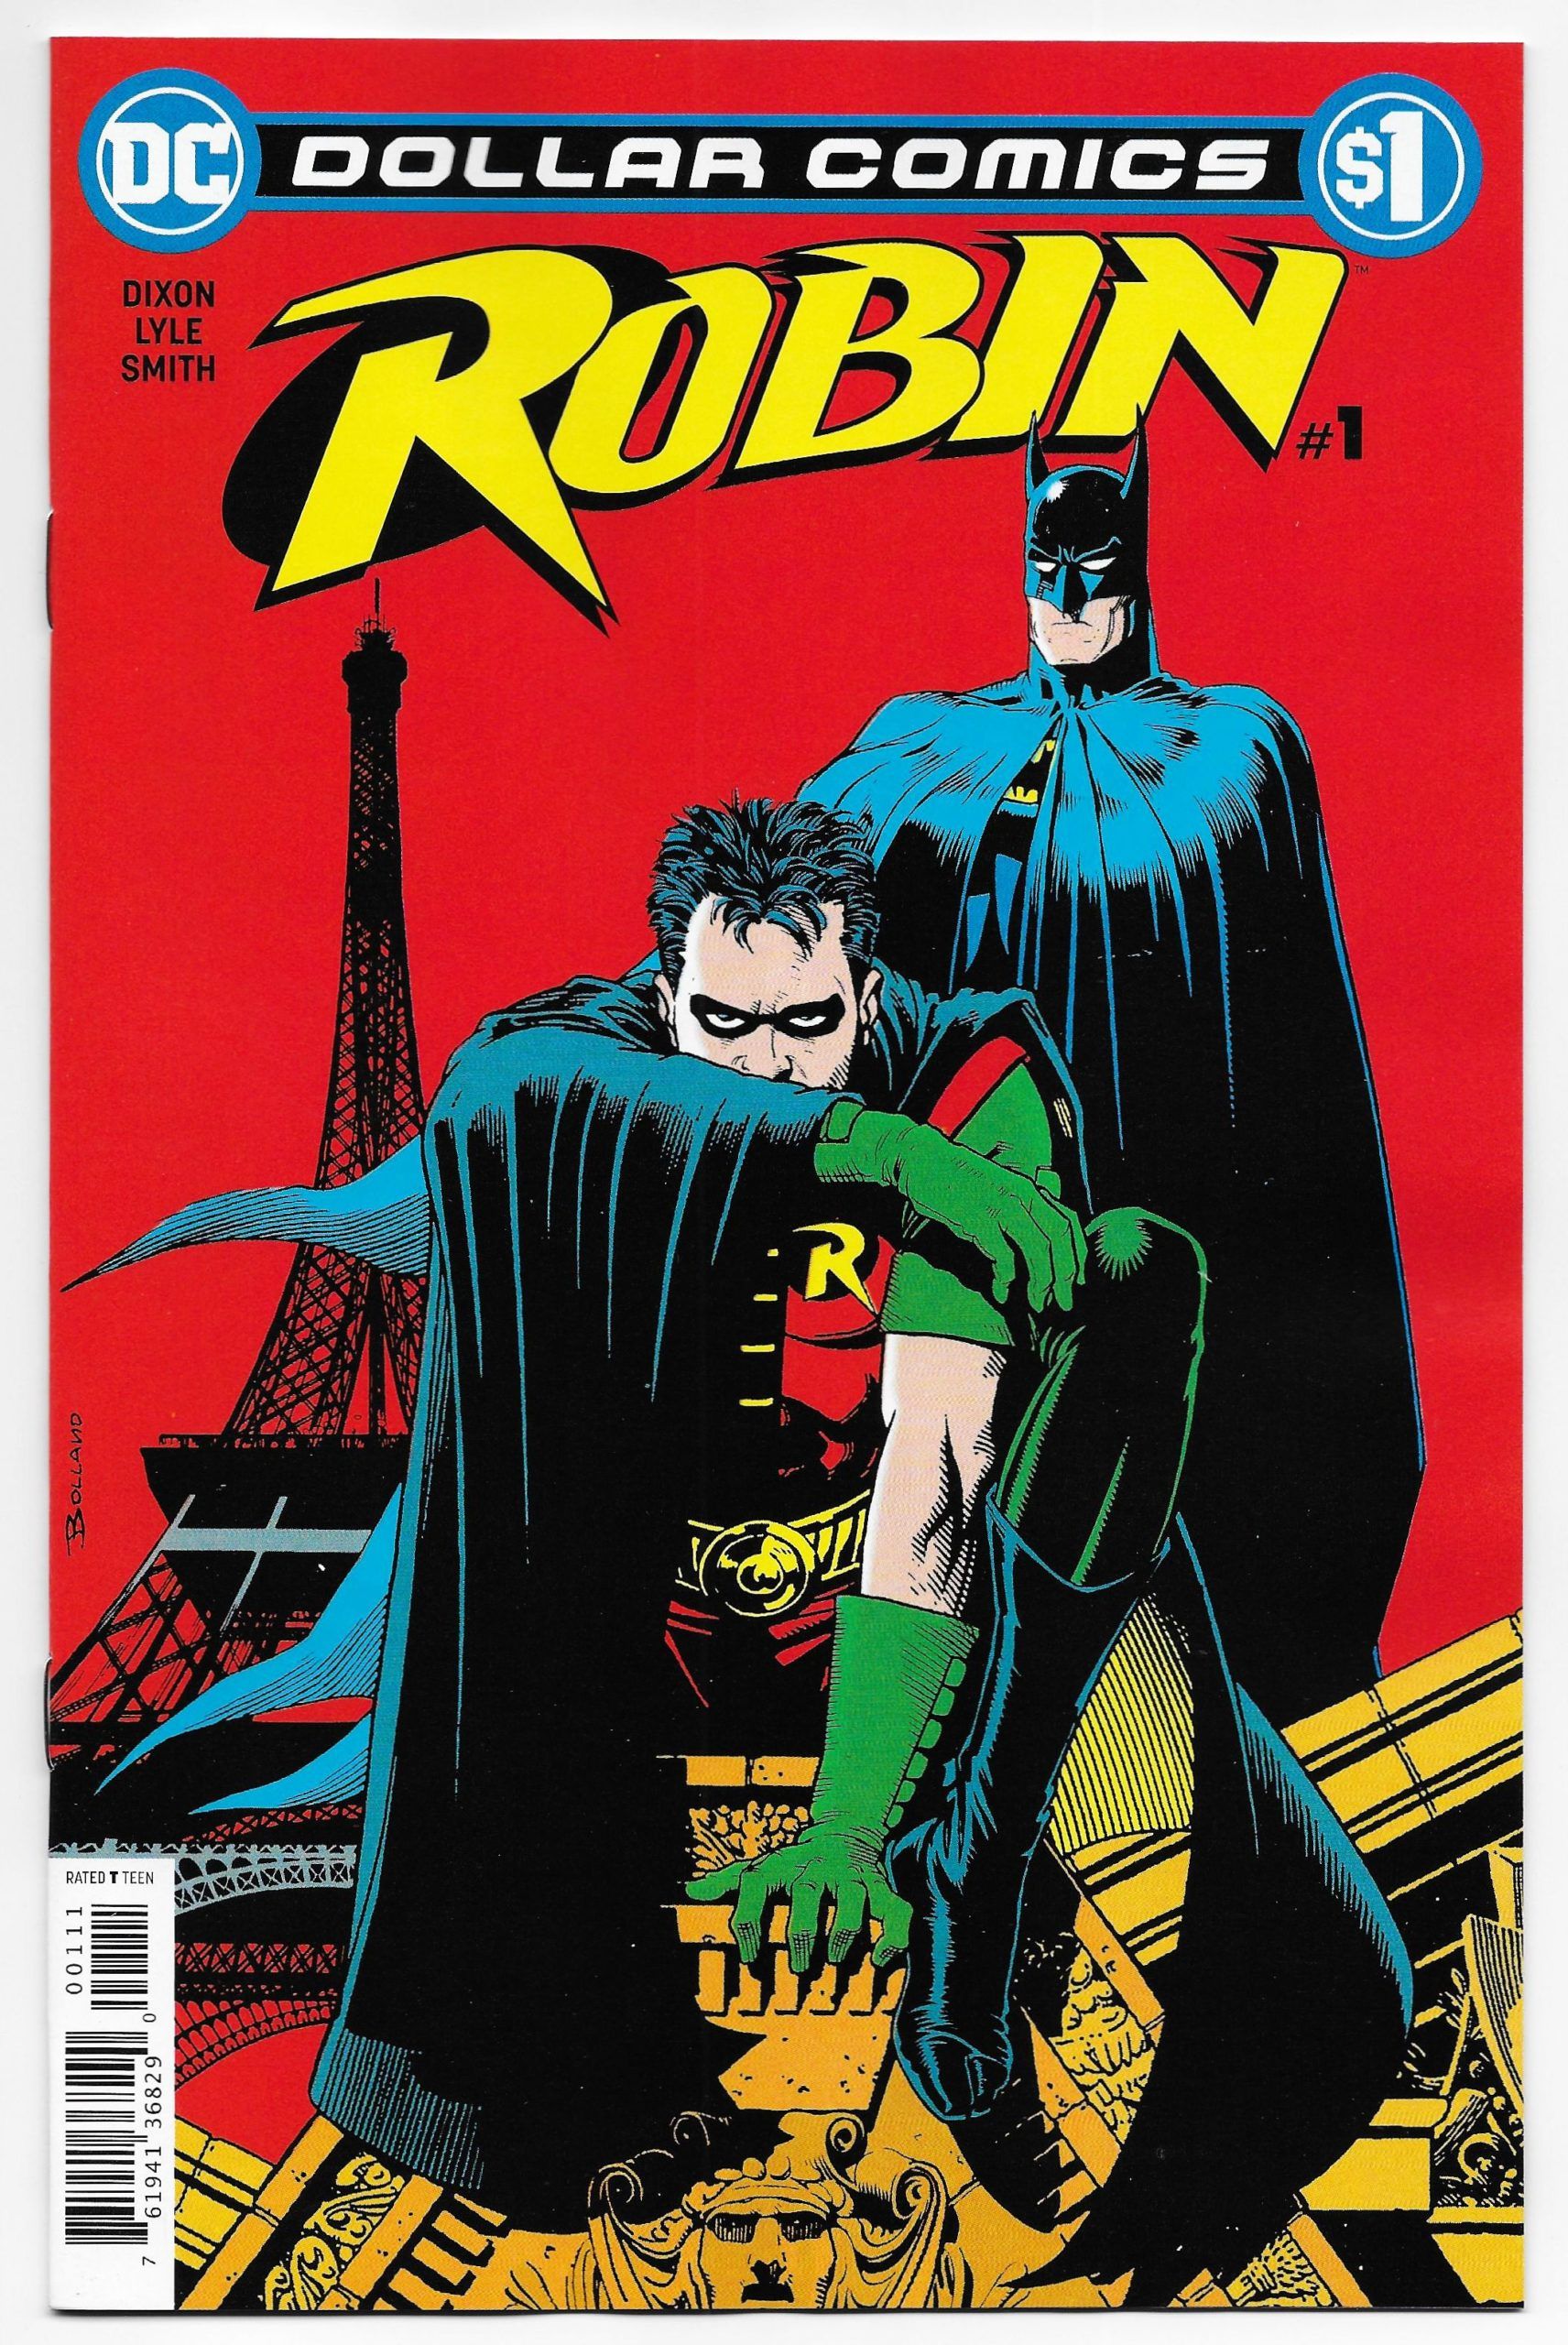 Dollar Comics: Robin #1 Comic